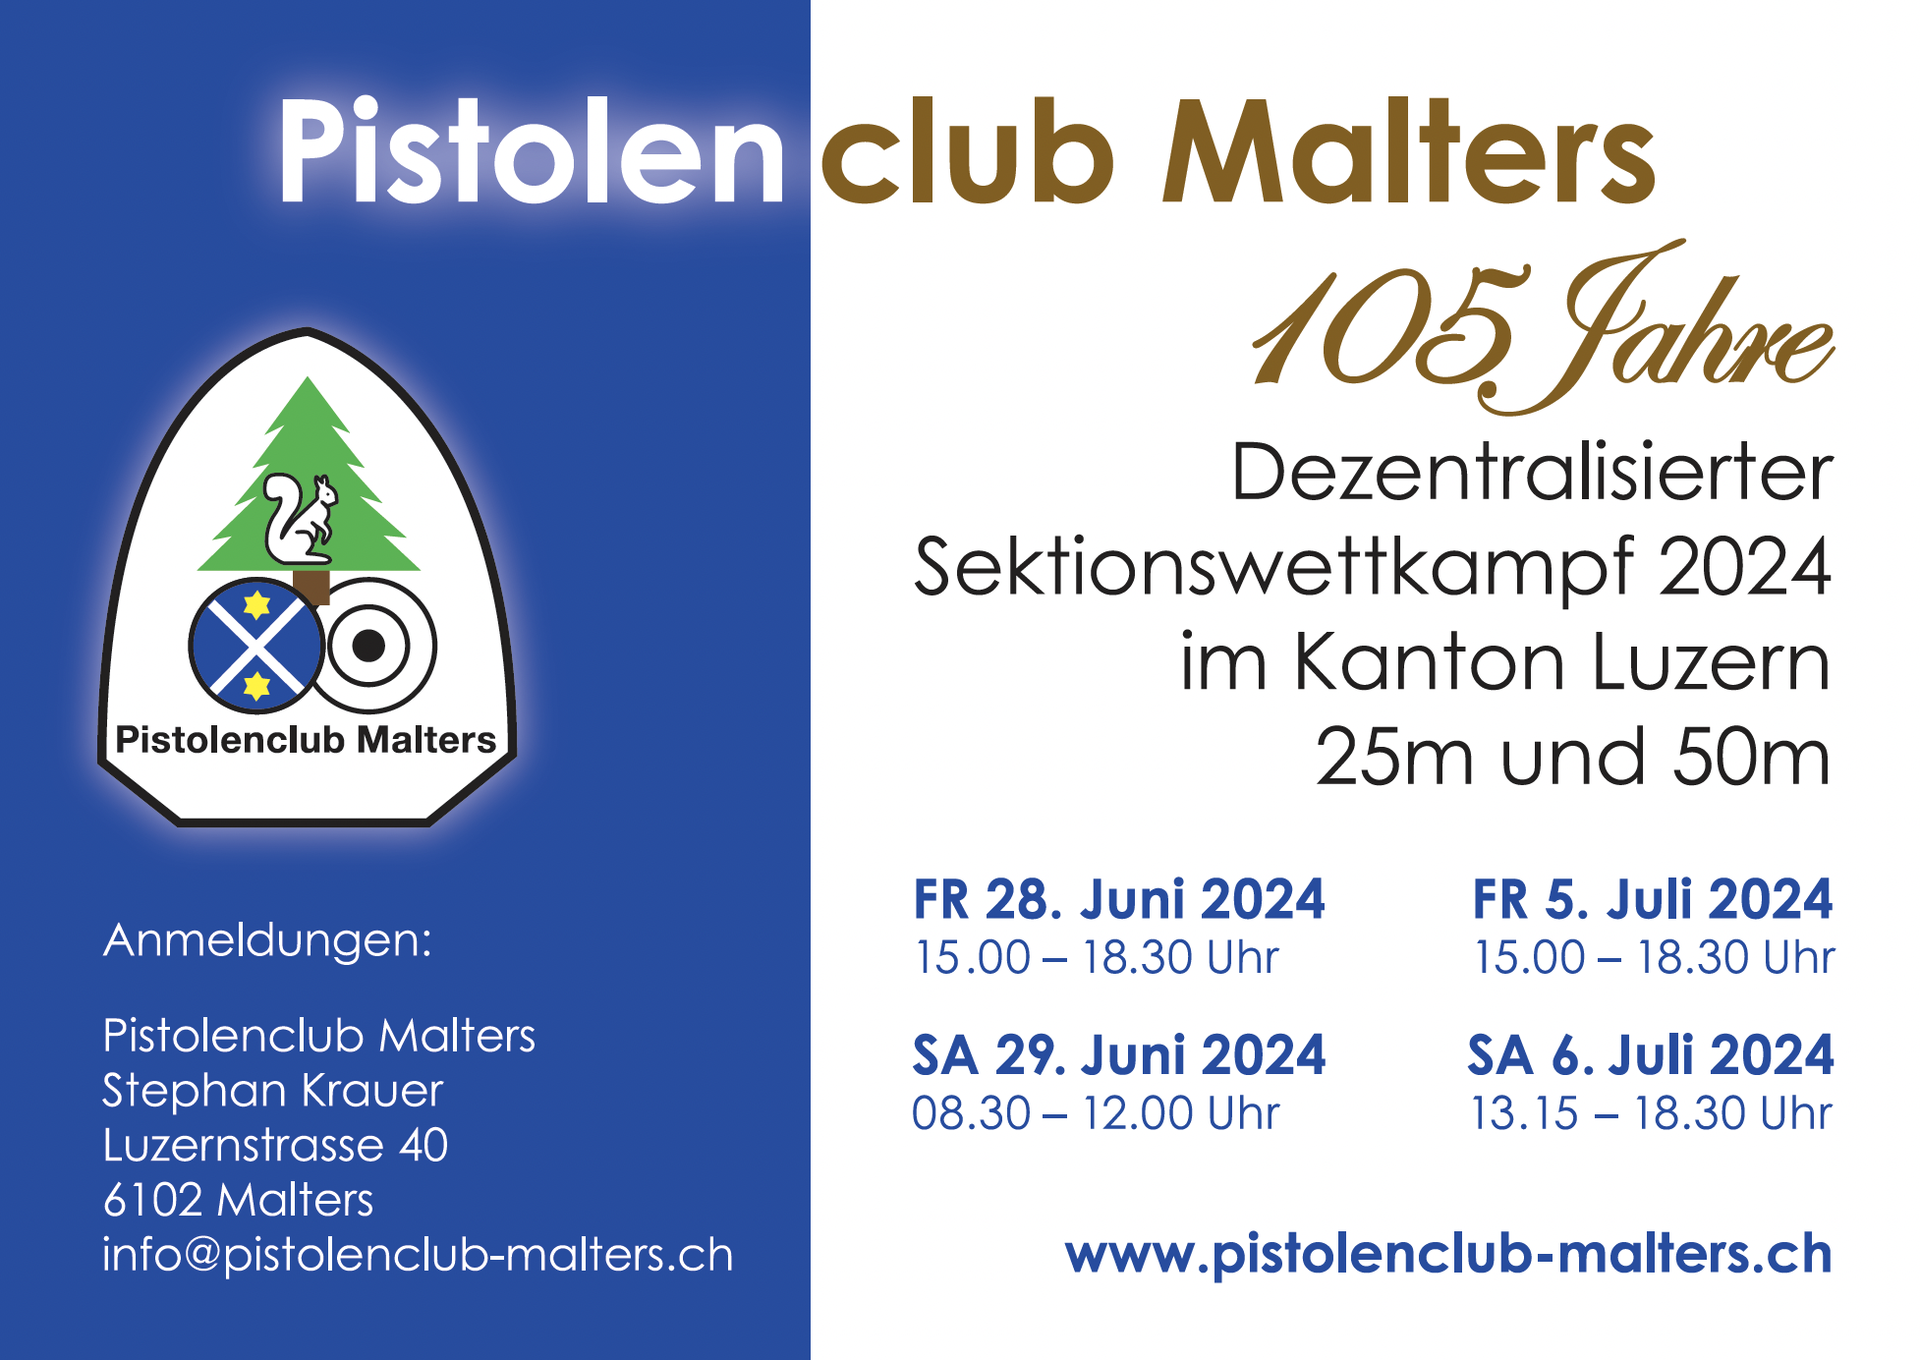 (c) Pistolenclub-malters.ch